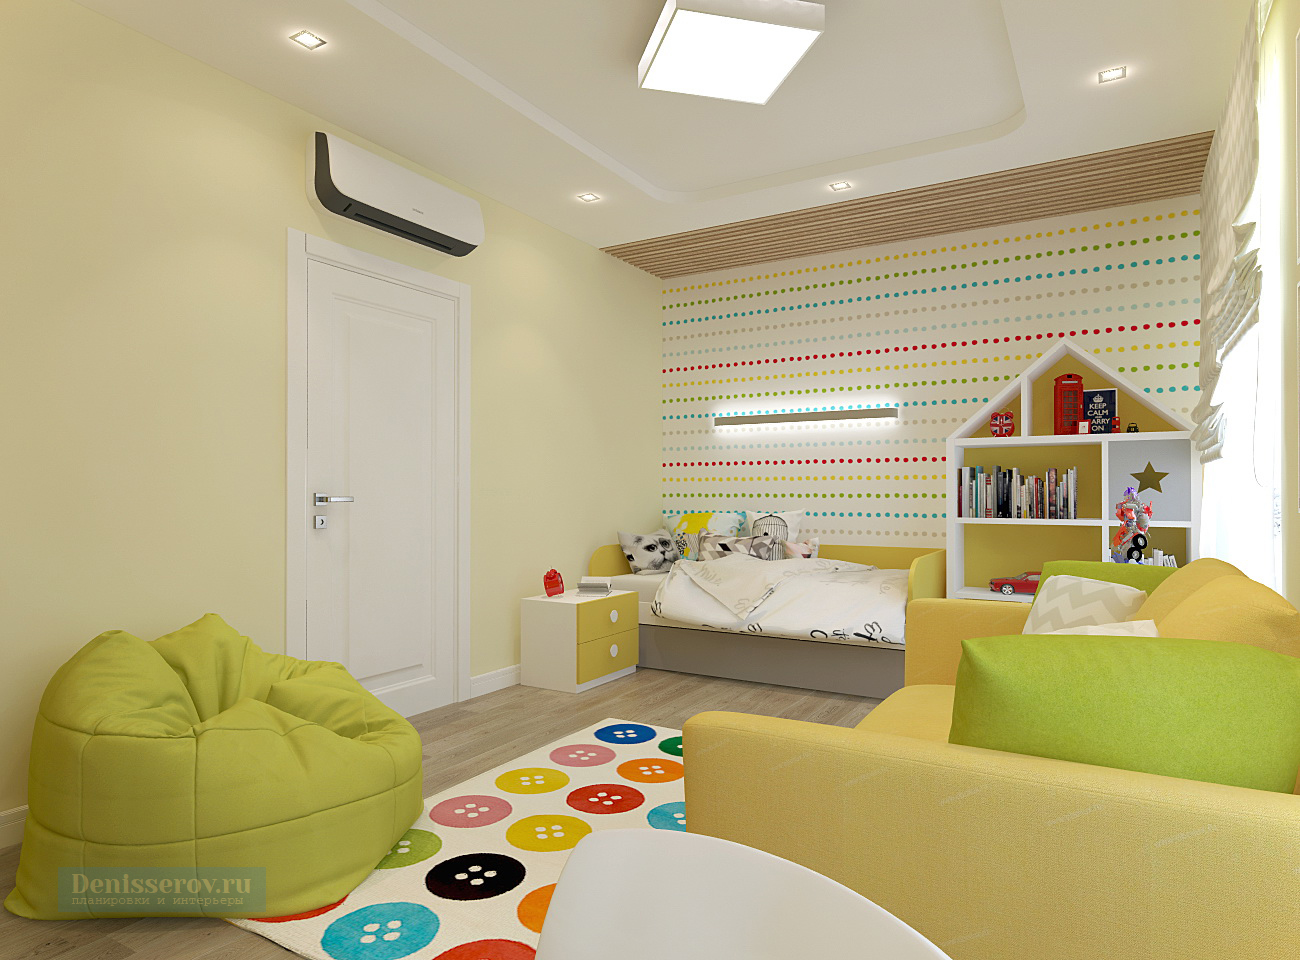 Дизайн детской комнаты 18 кв.м. для двух детей